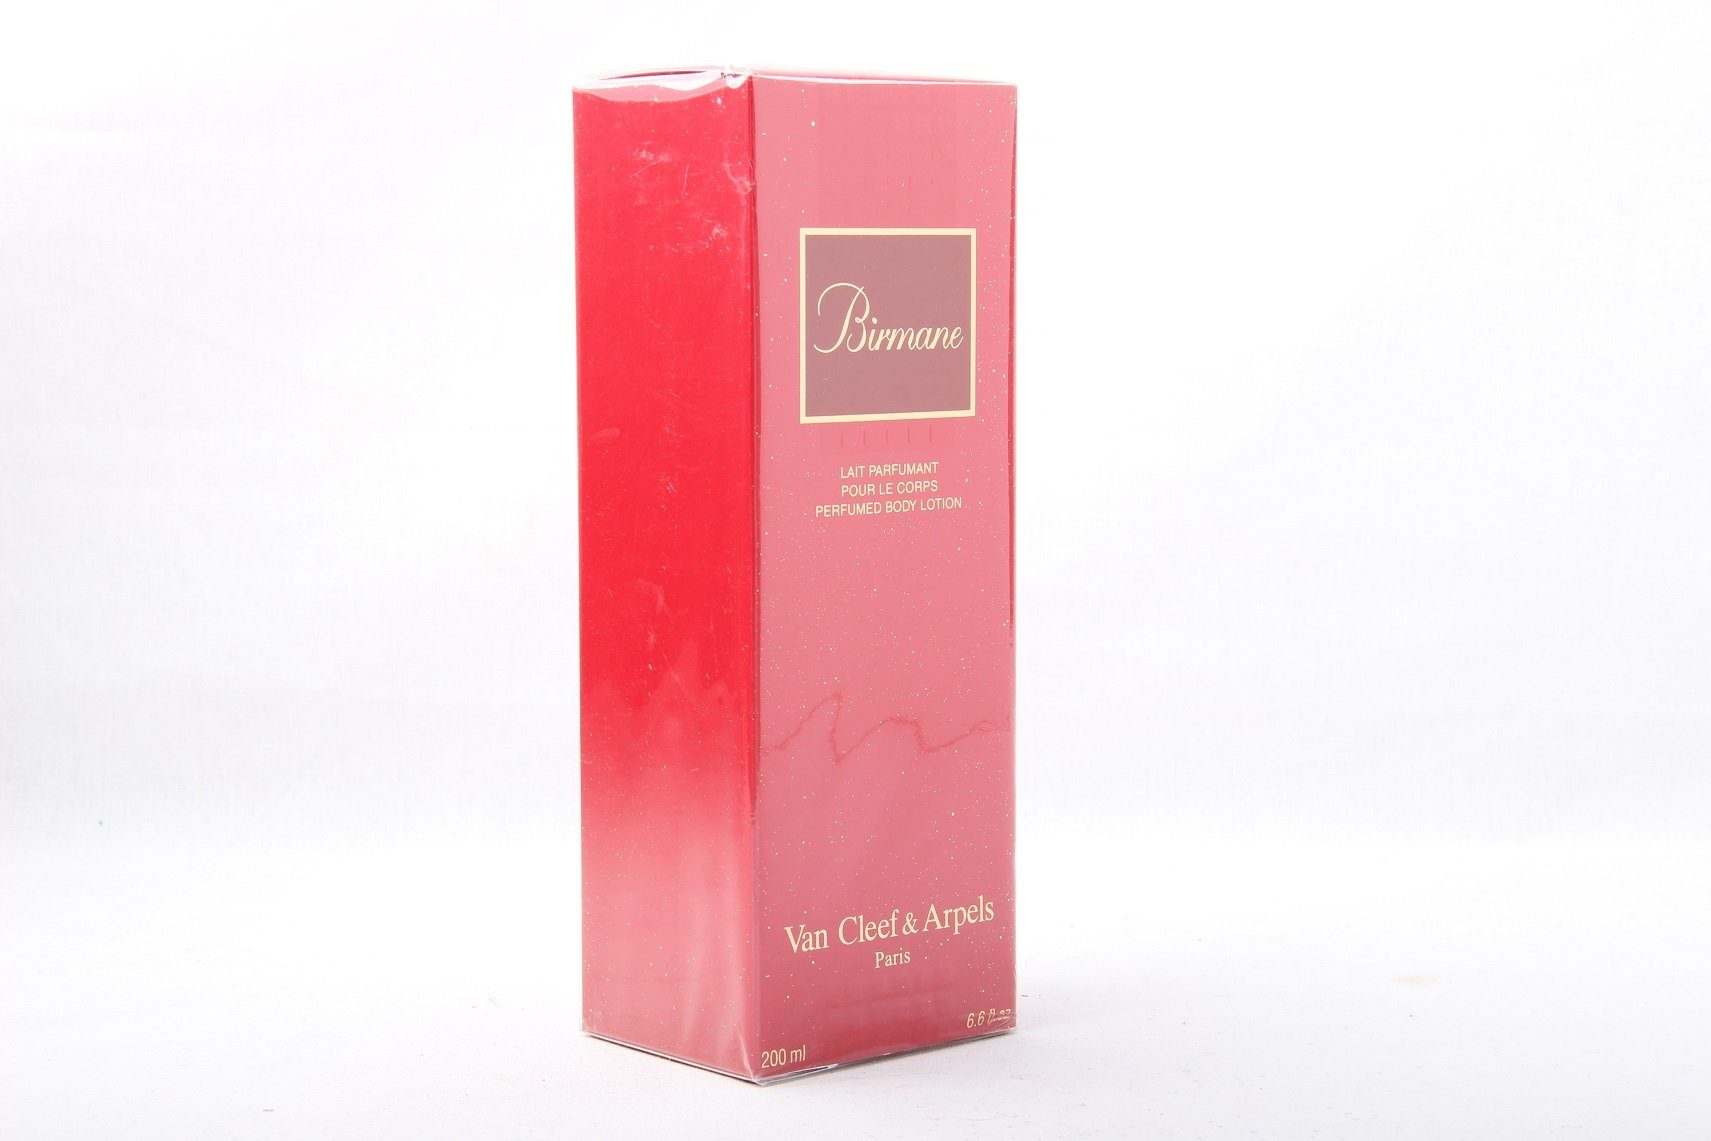 200ml Birmane Body & Cleef Lotion Perfumed Arpels Arpels Körperpflegeduft & Cleef Van Van